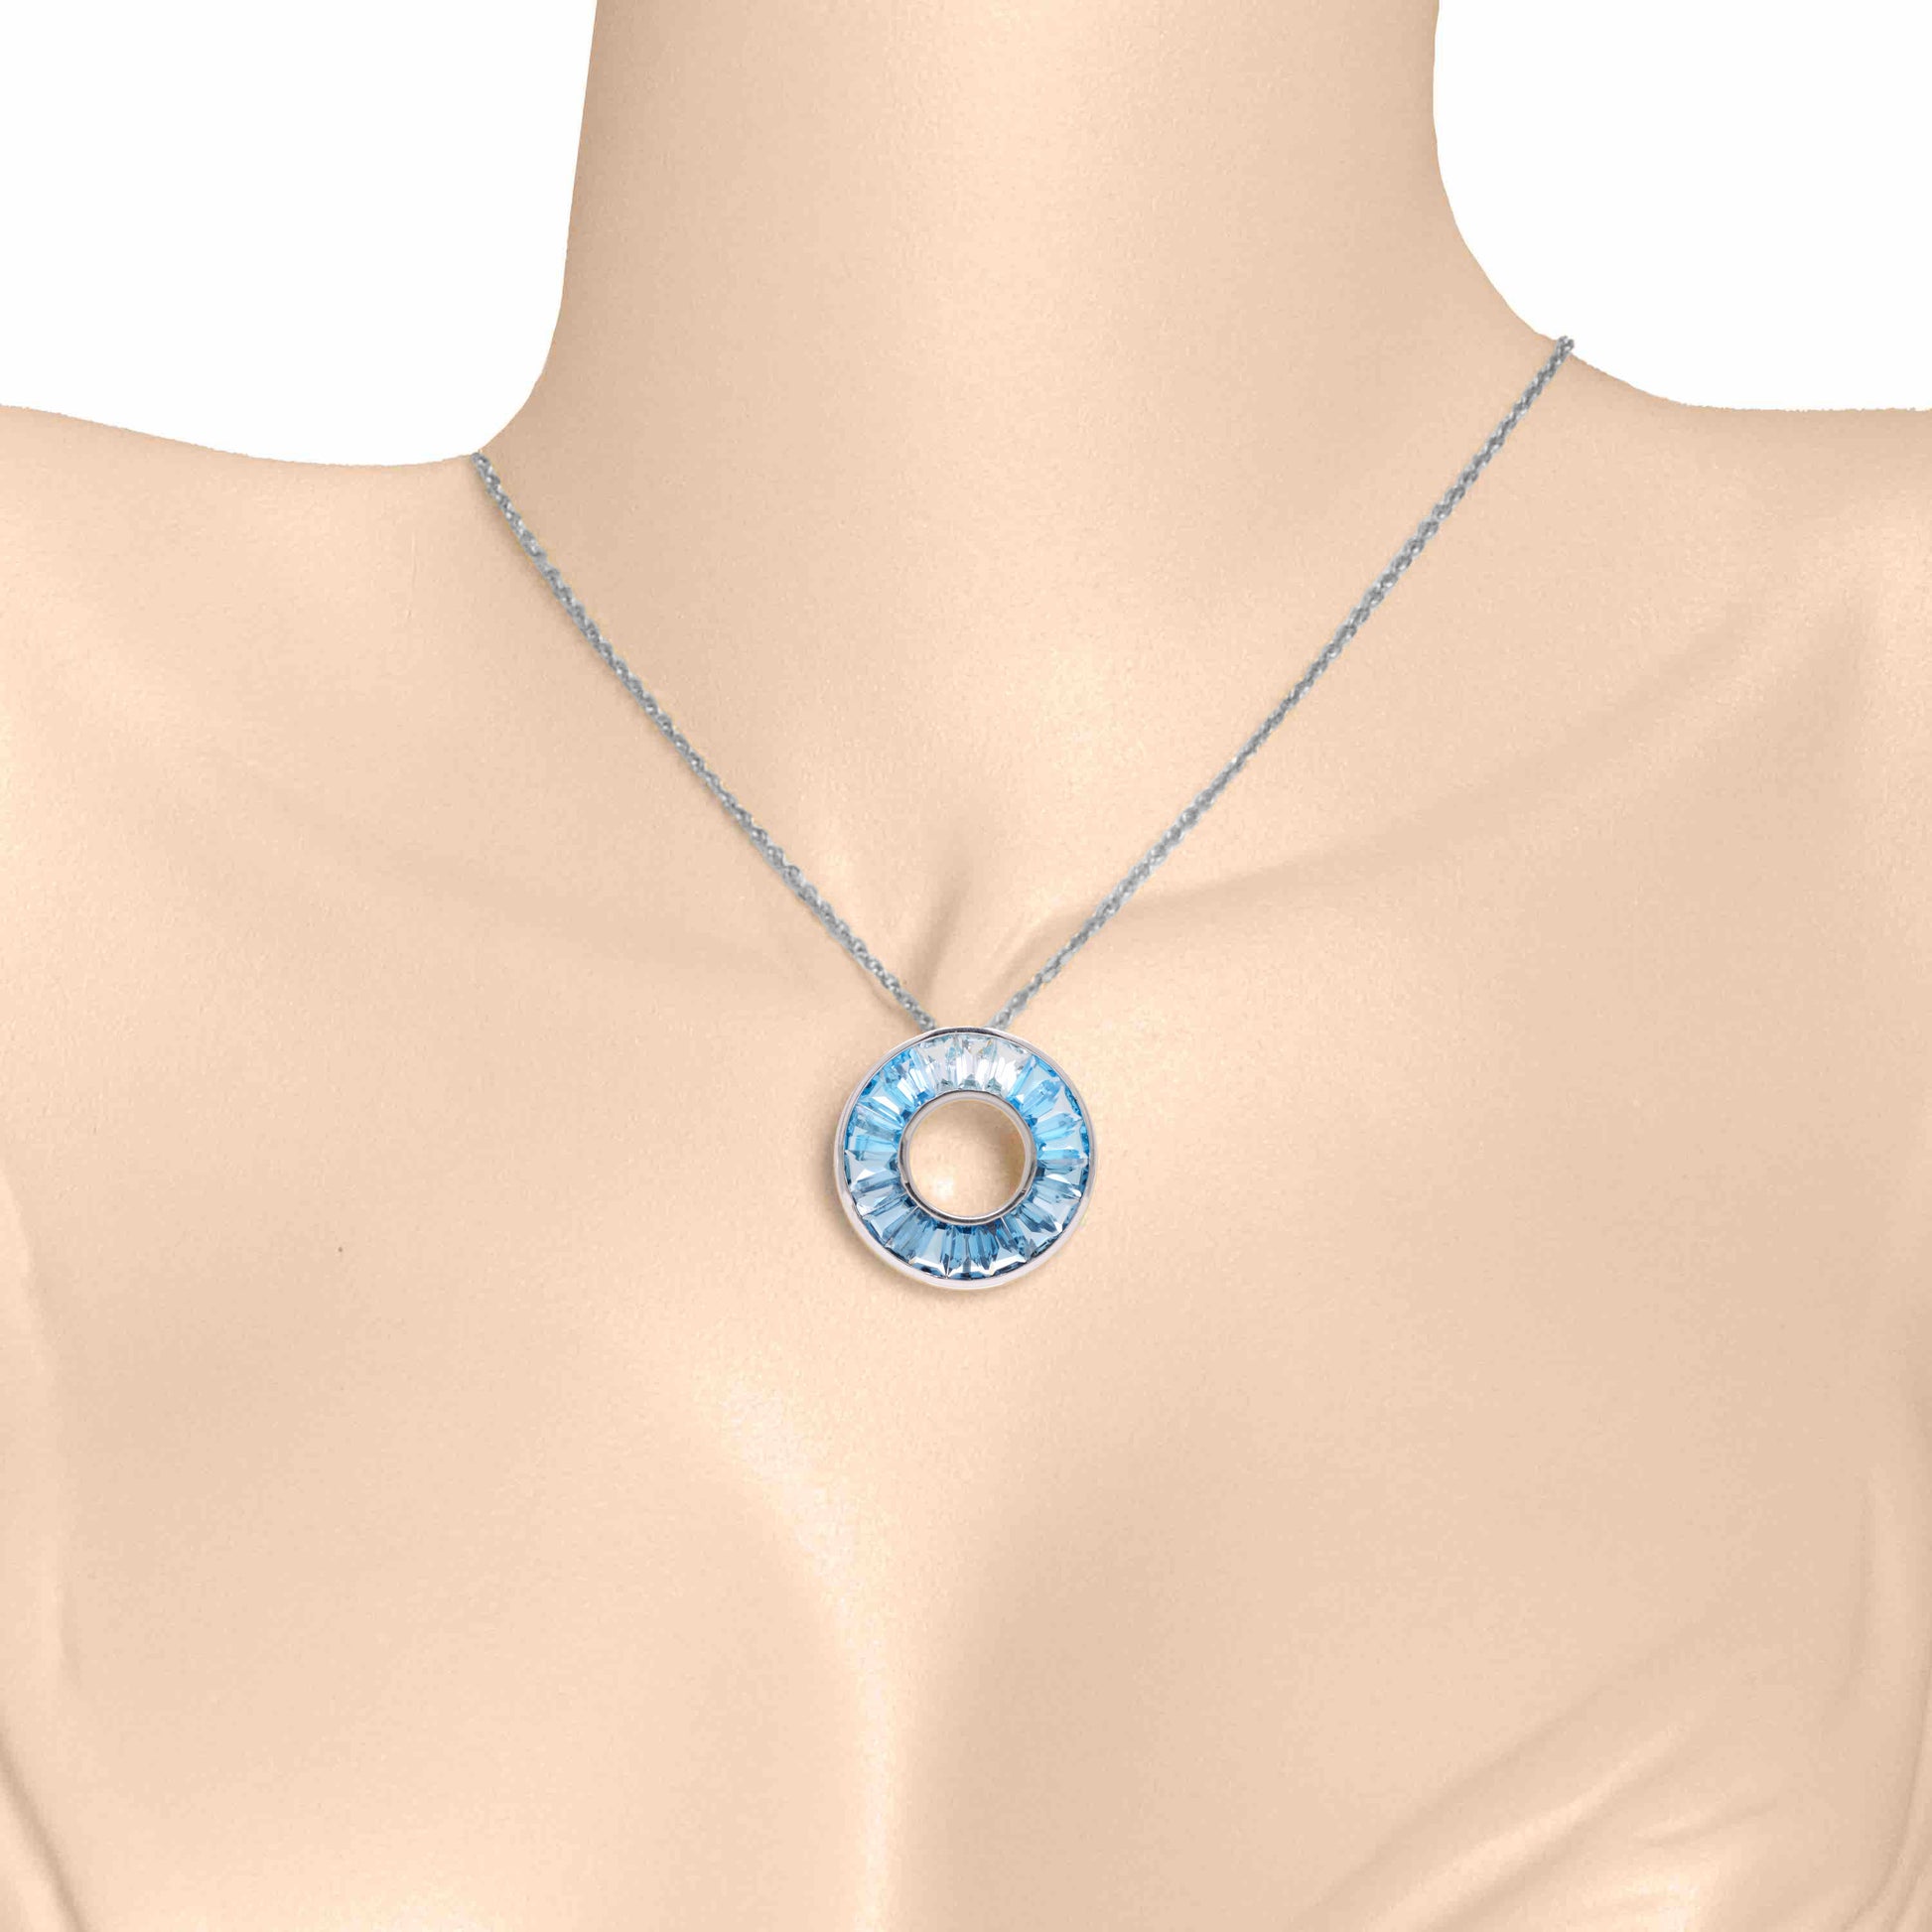 London blue topaz pendant necklace